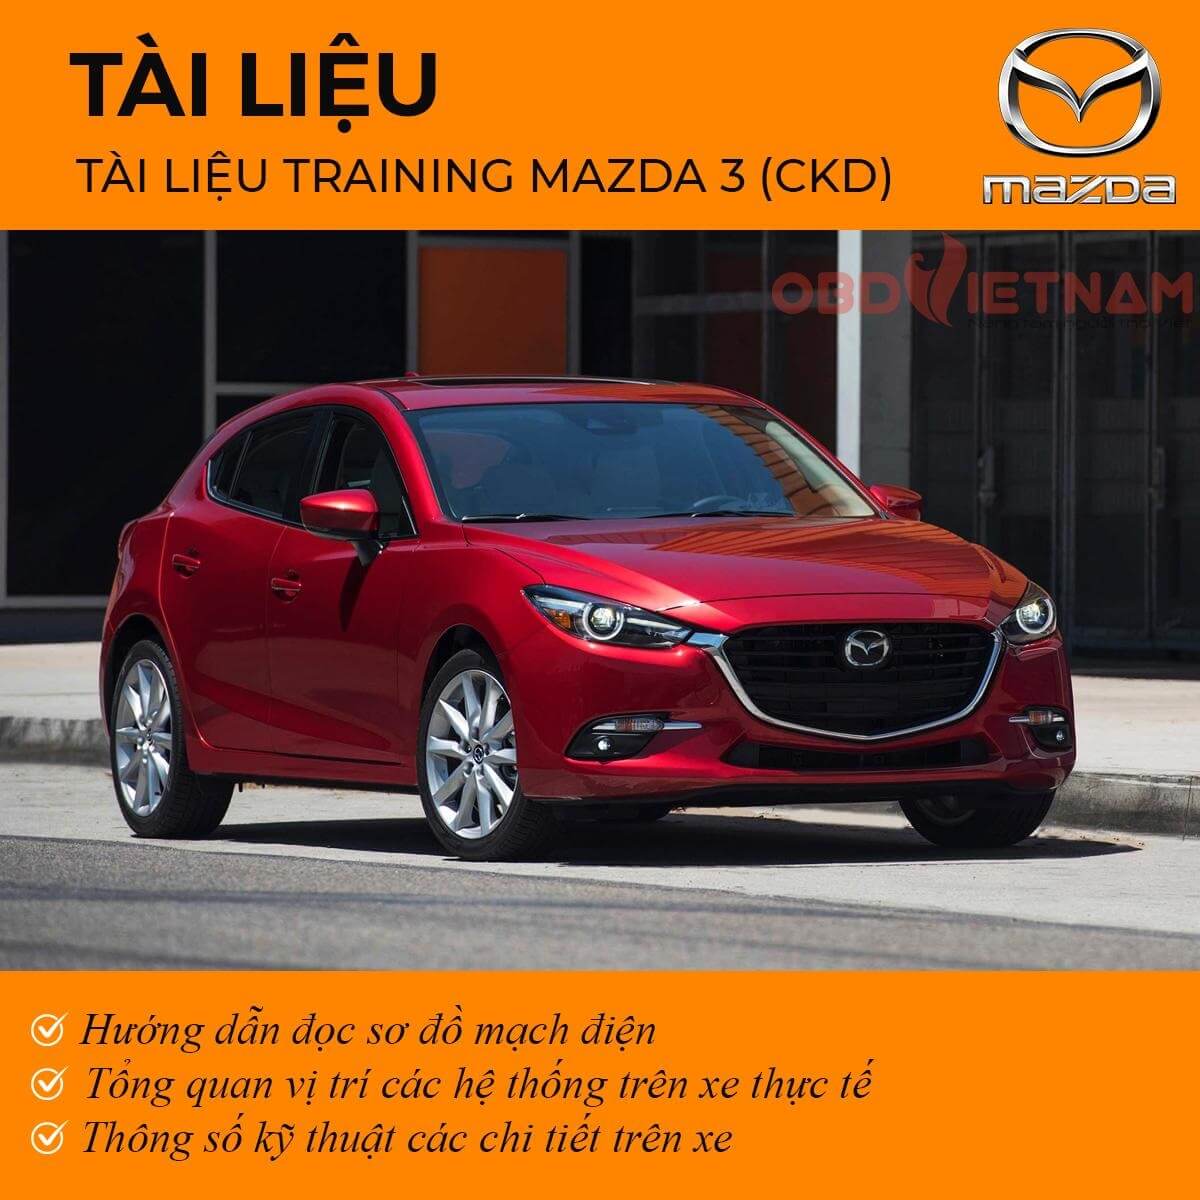 Tài liệu training Mazda 3